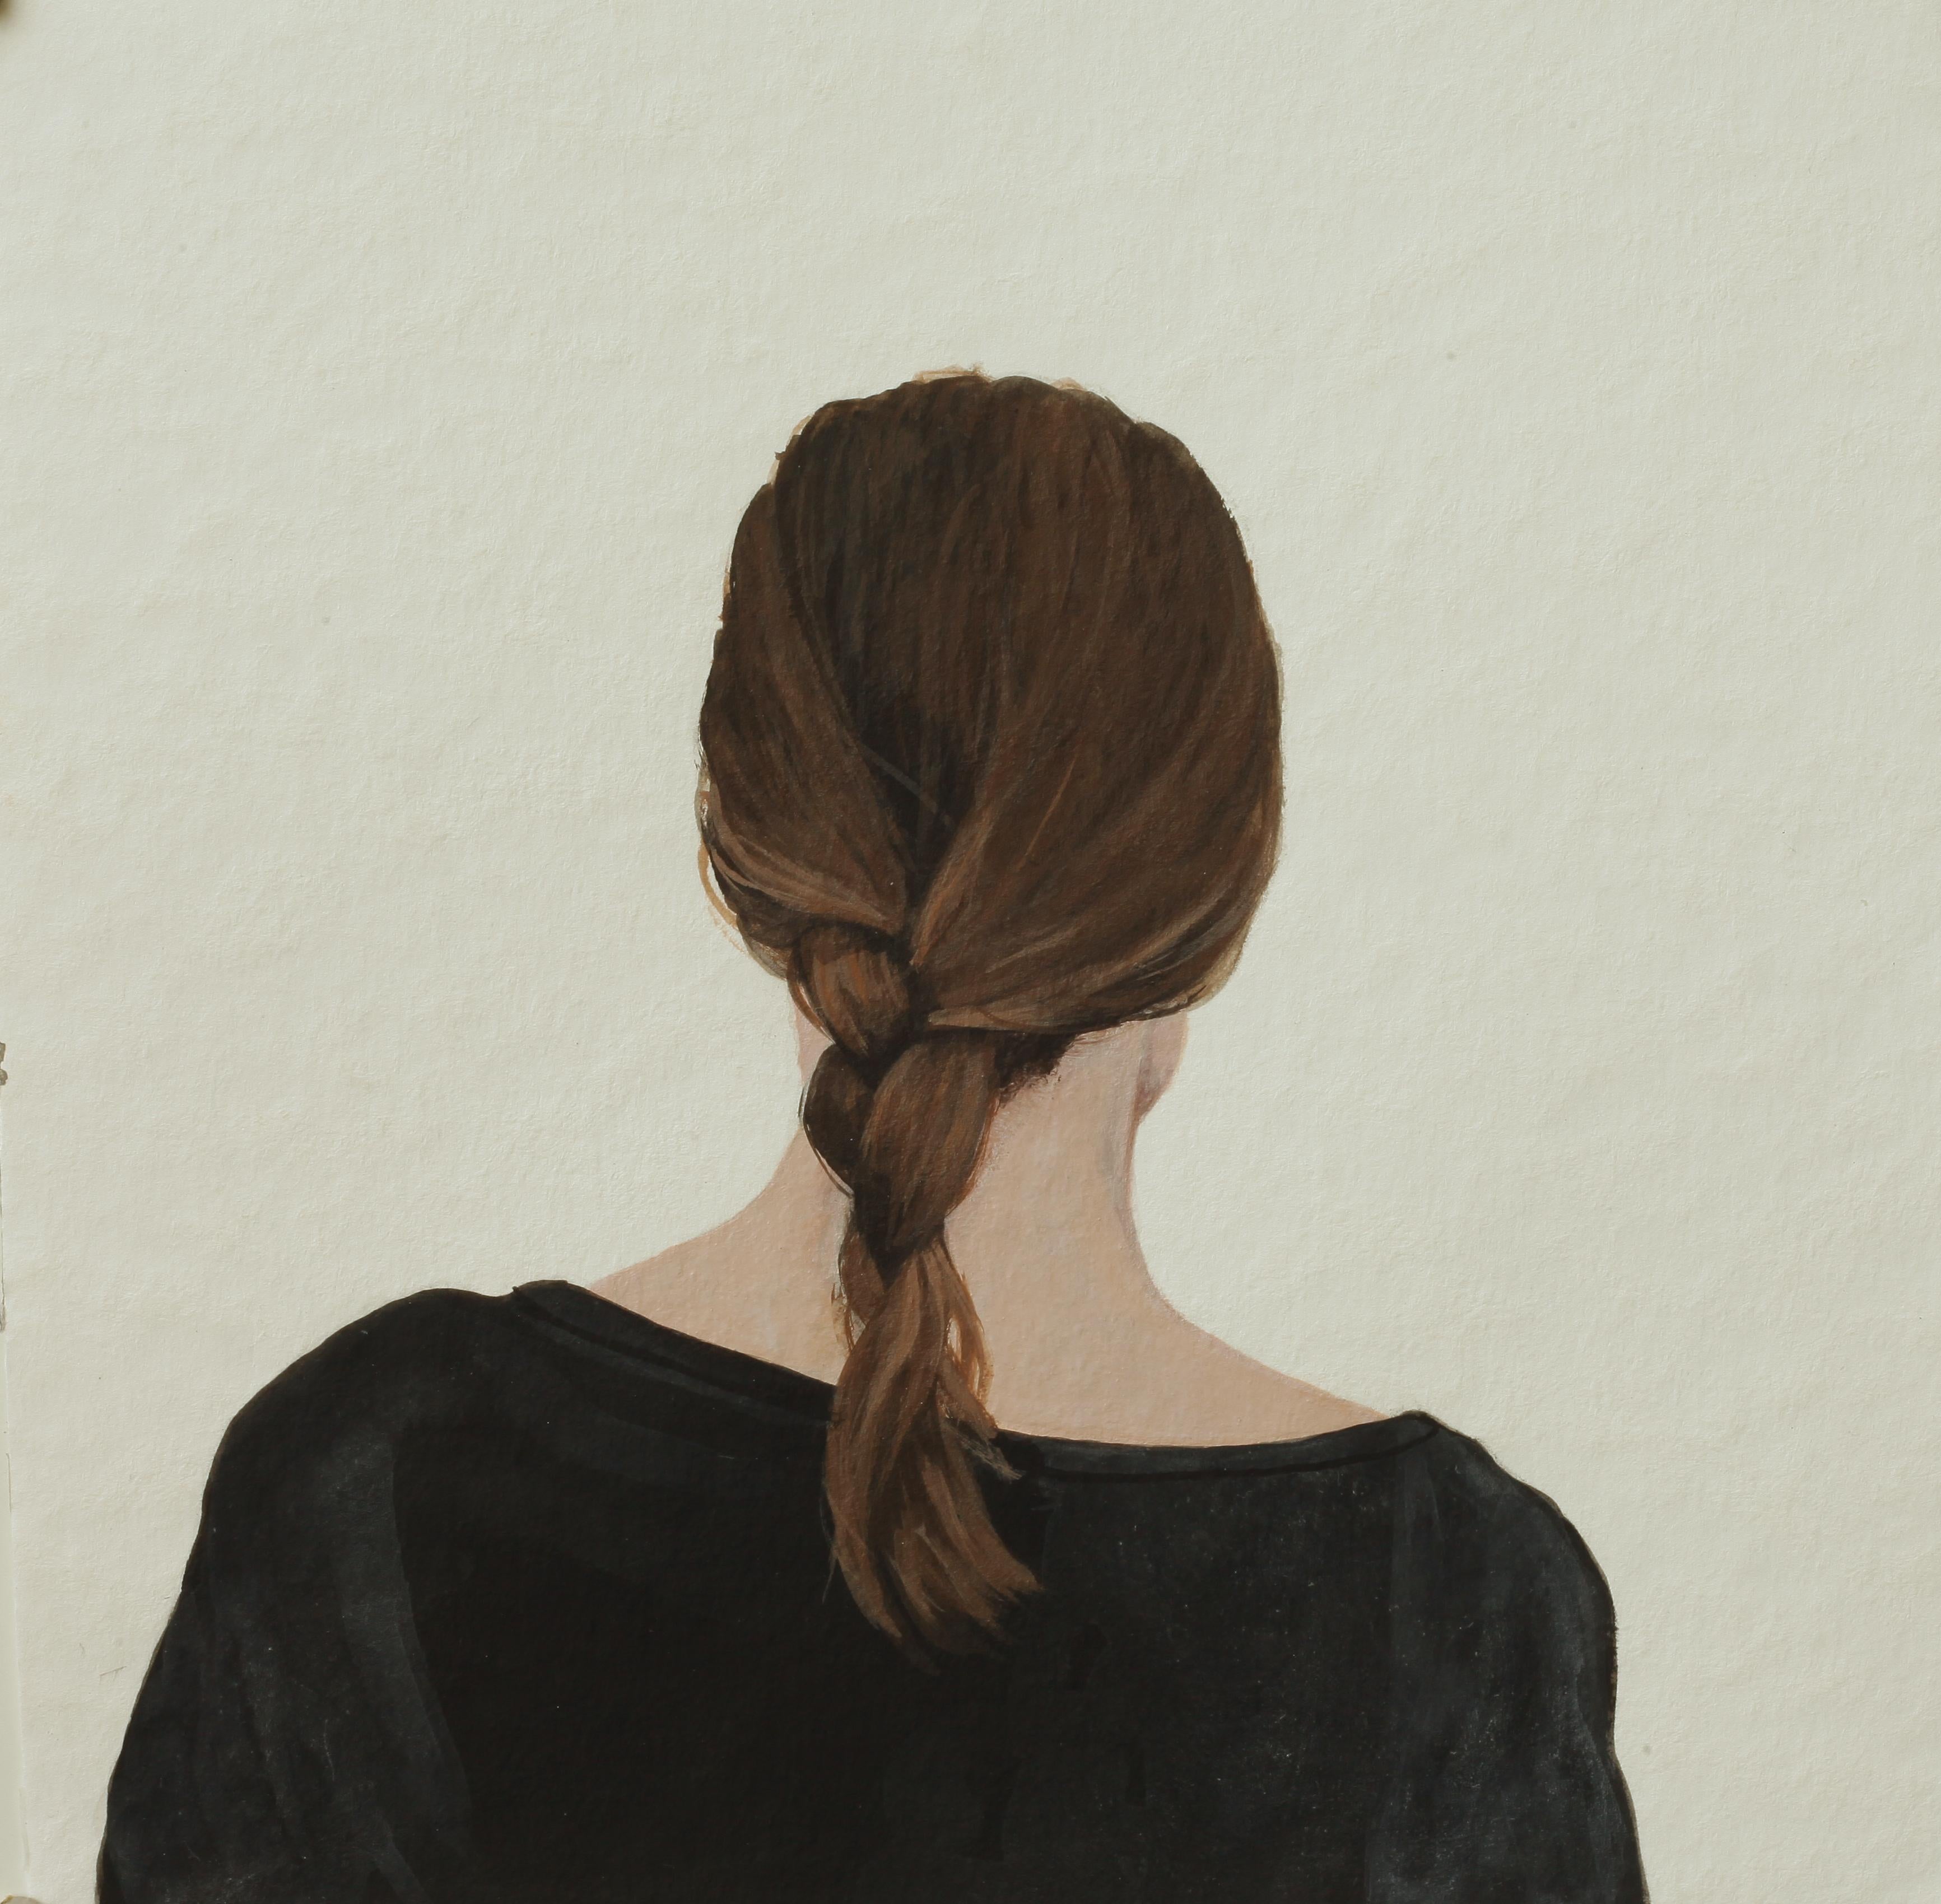 Figurative Painting Karoline Kroiss - "Portrait de dos VII" Peinture contemporaine d'une jeune fille